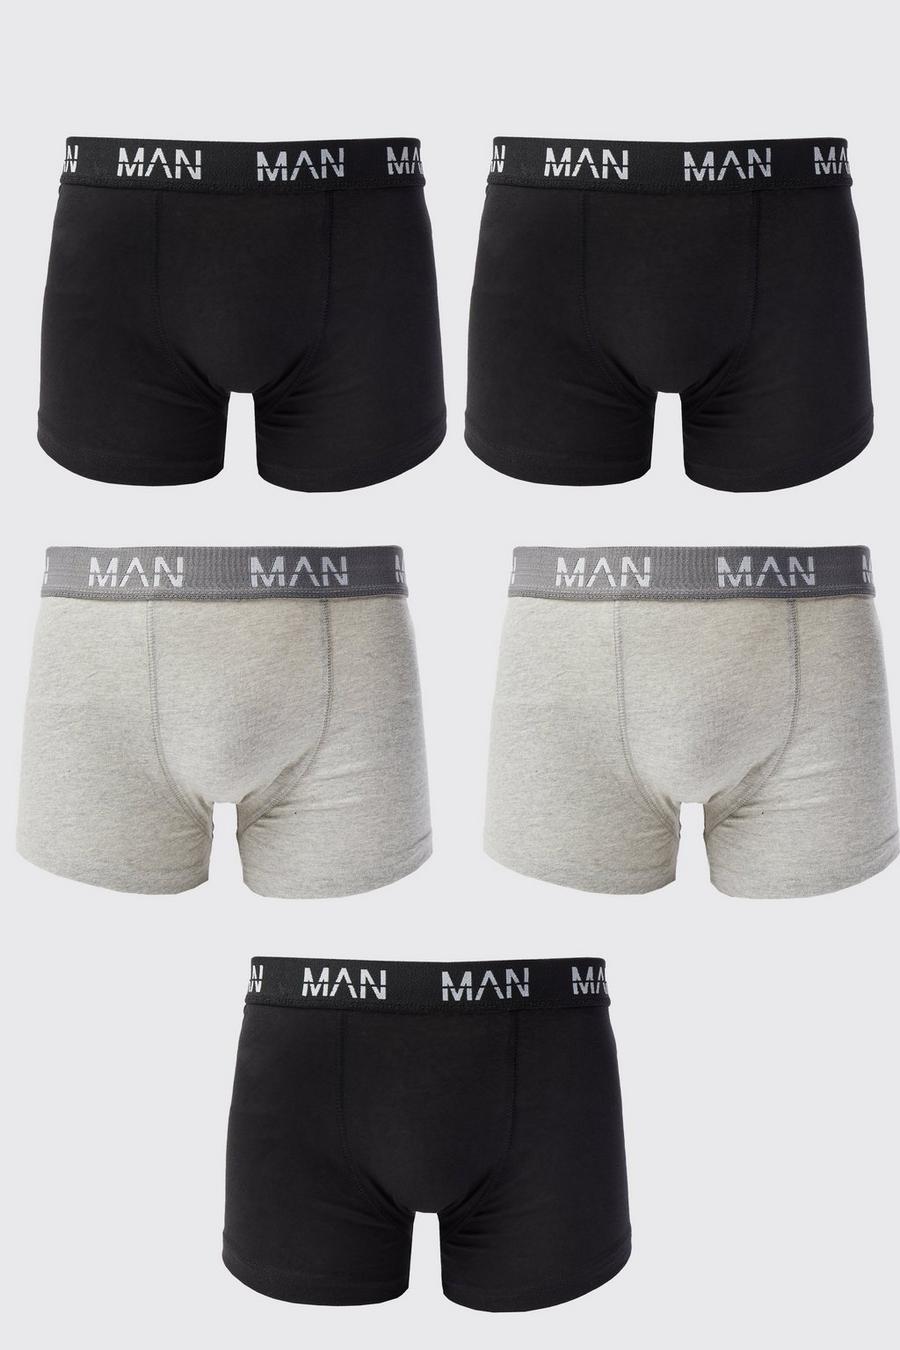 Men's Underwear, Men's Boxers & Men's Socks